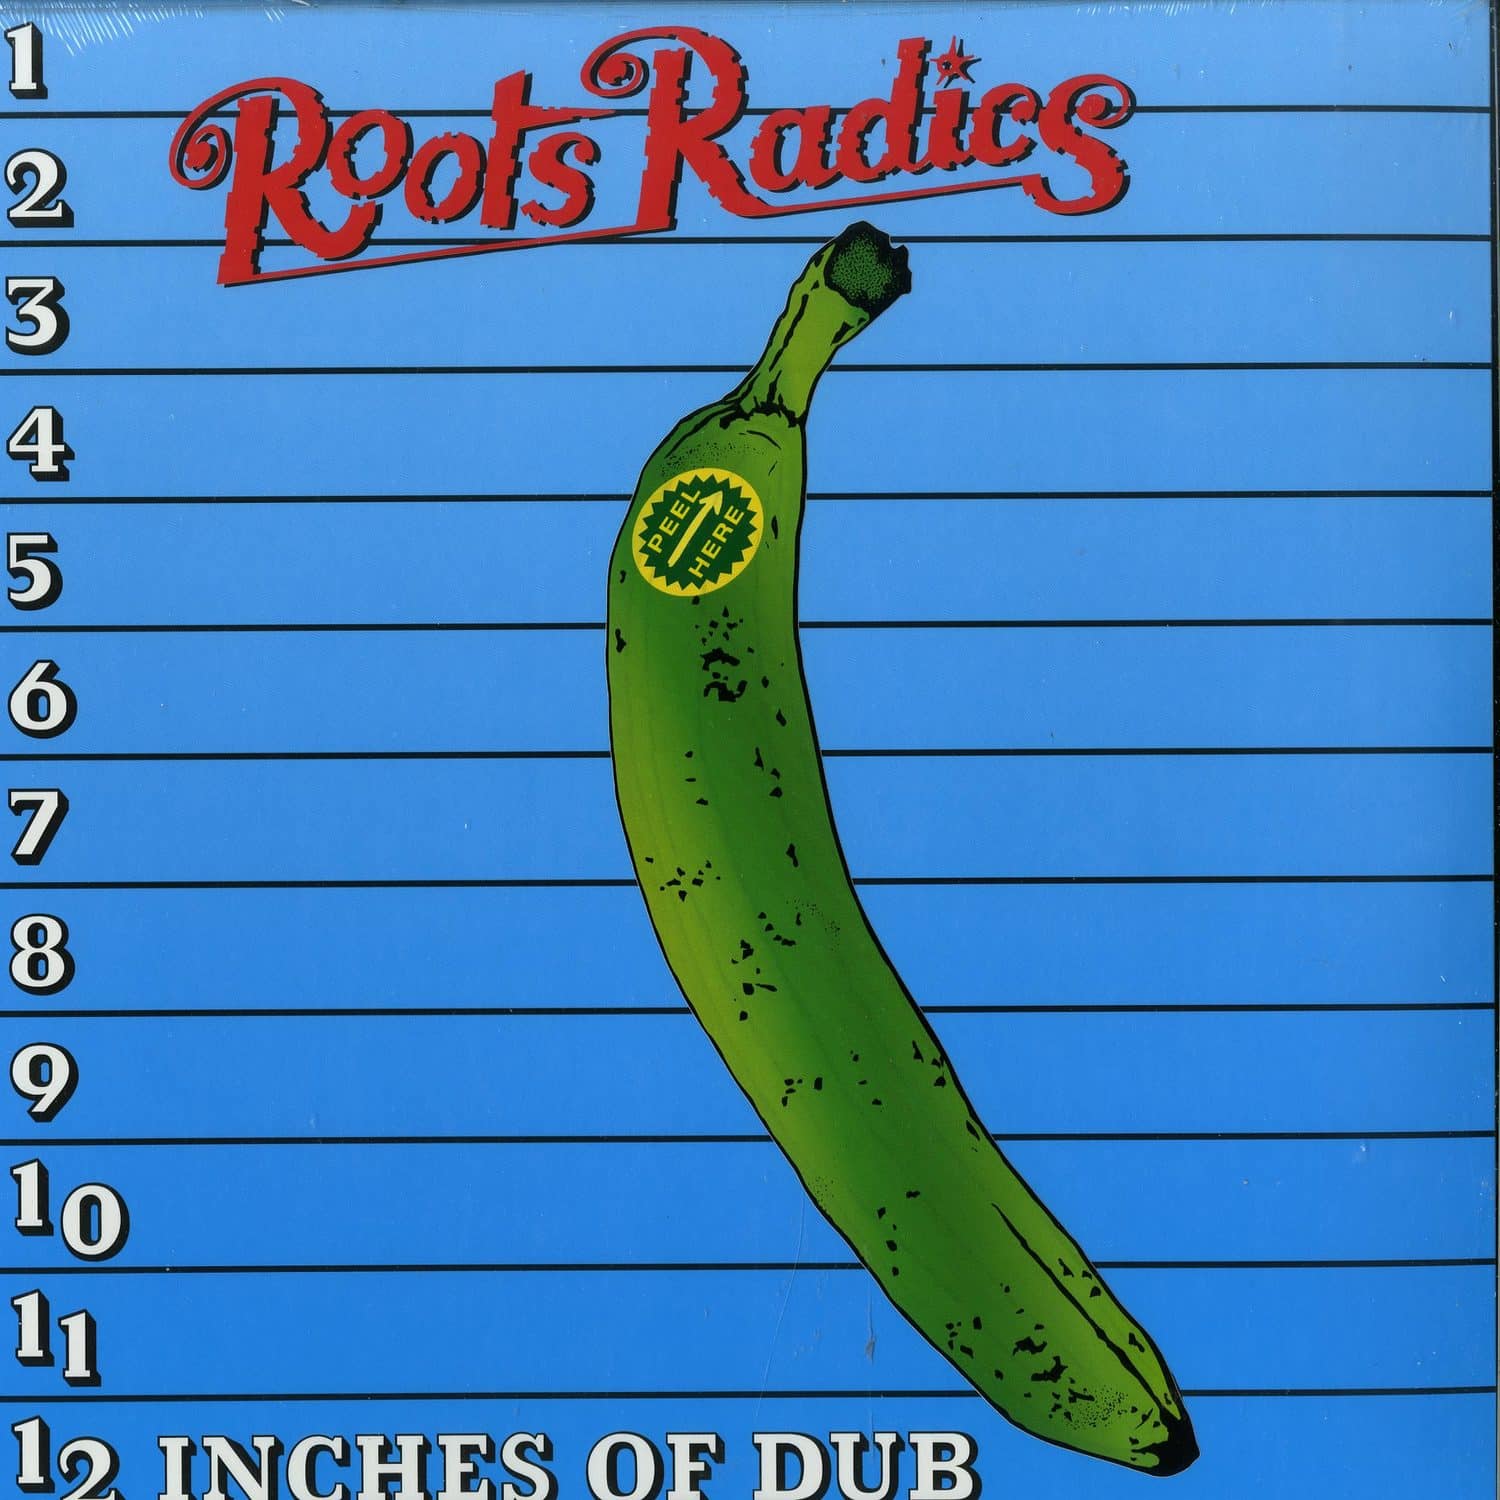 Roots Radics - 12 INCHES OF DUB 